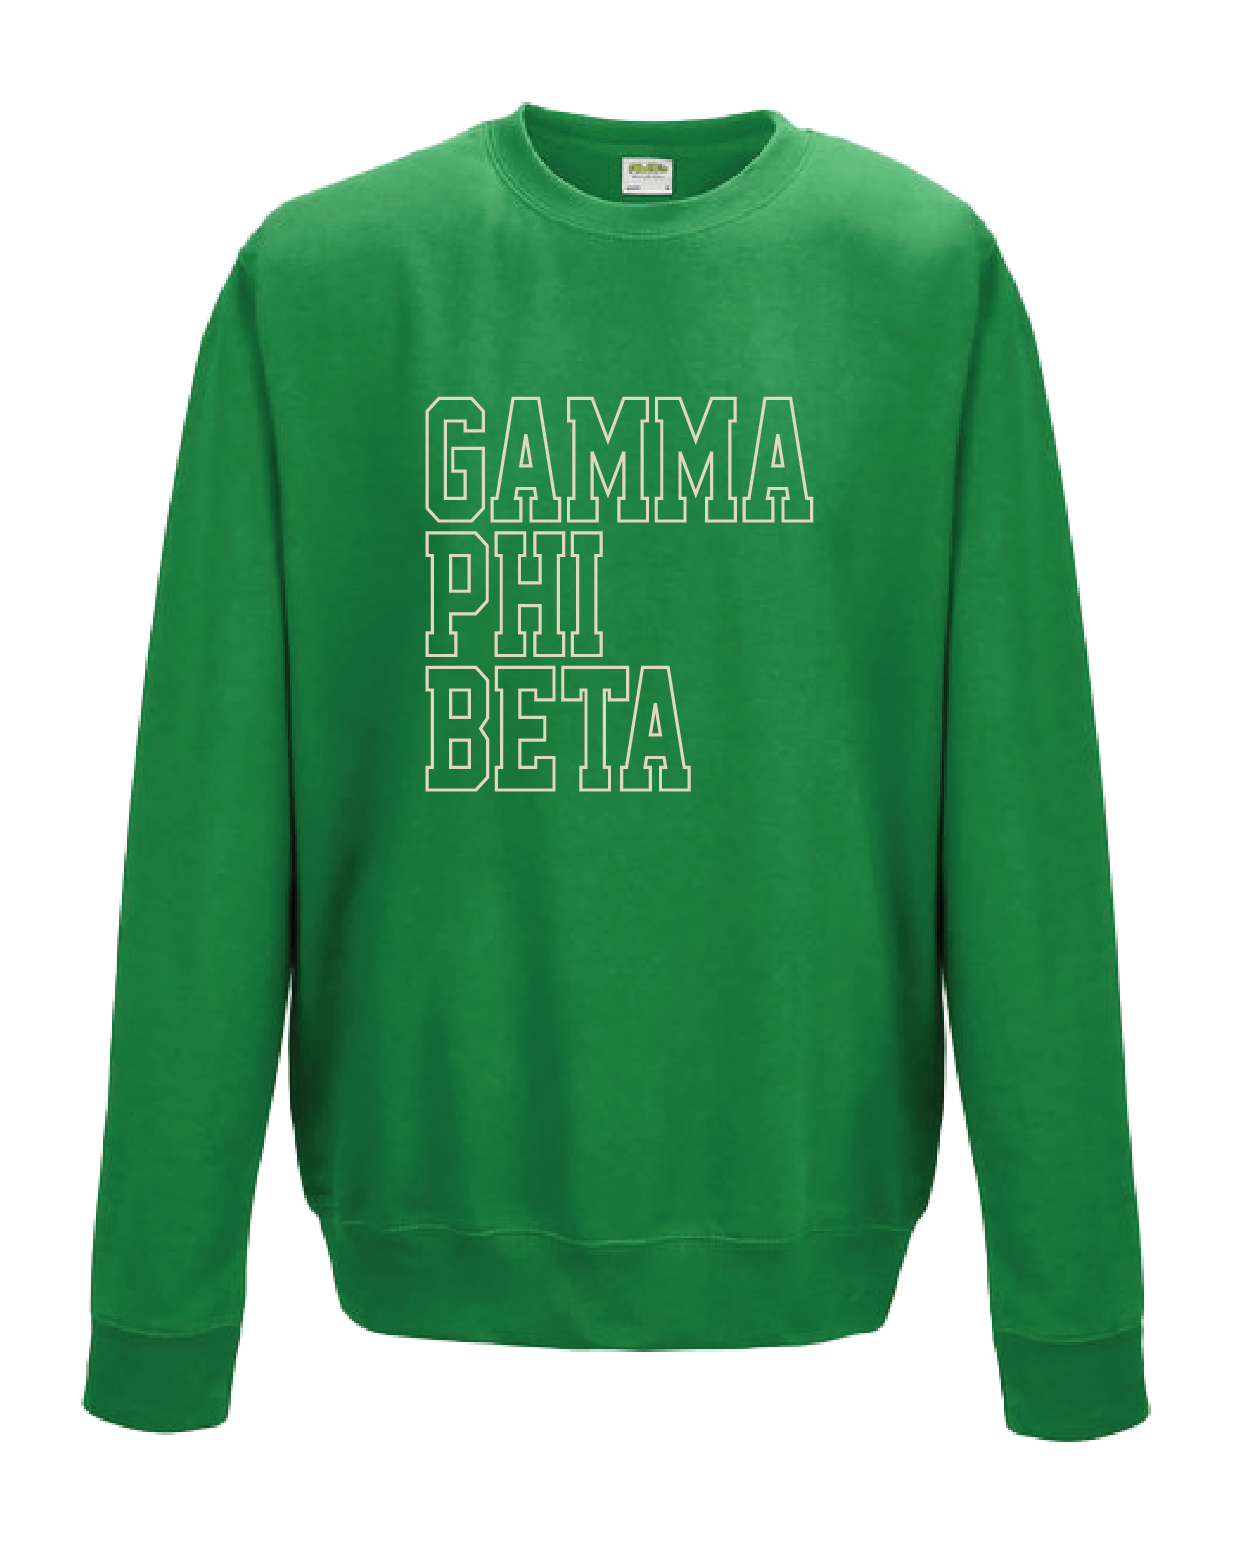 WS - Gamma Phi Beta Block Crewneck (min qty 6) $32 / $70